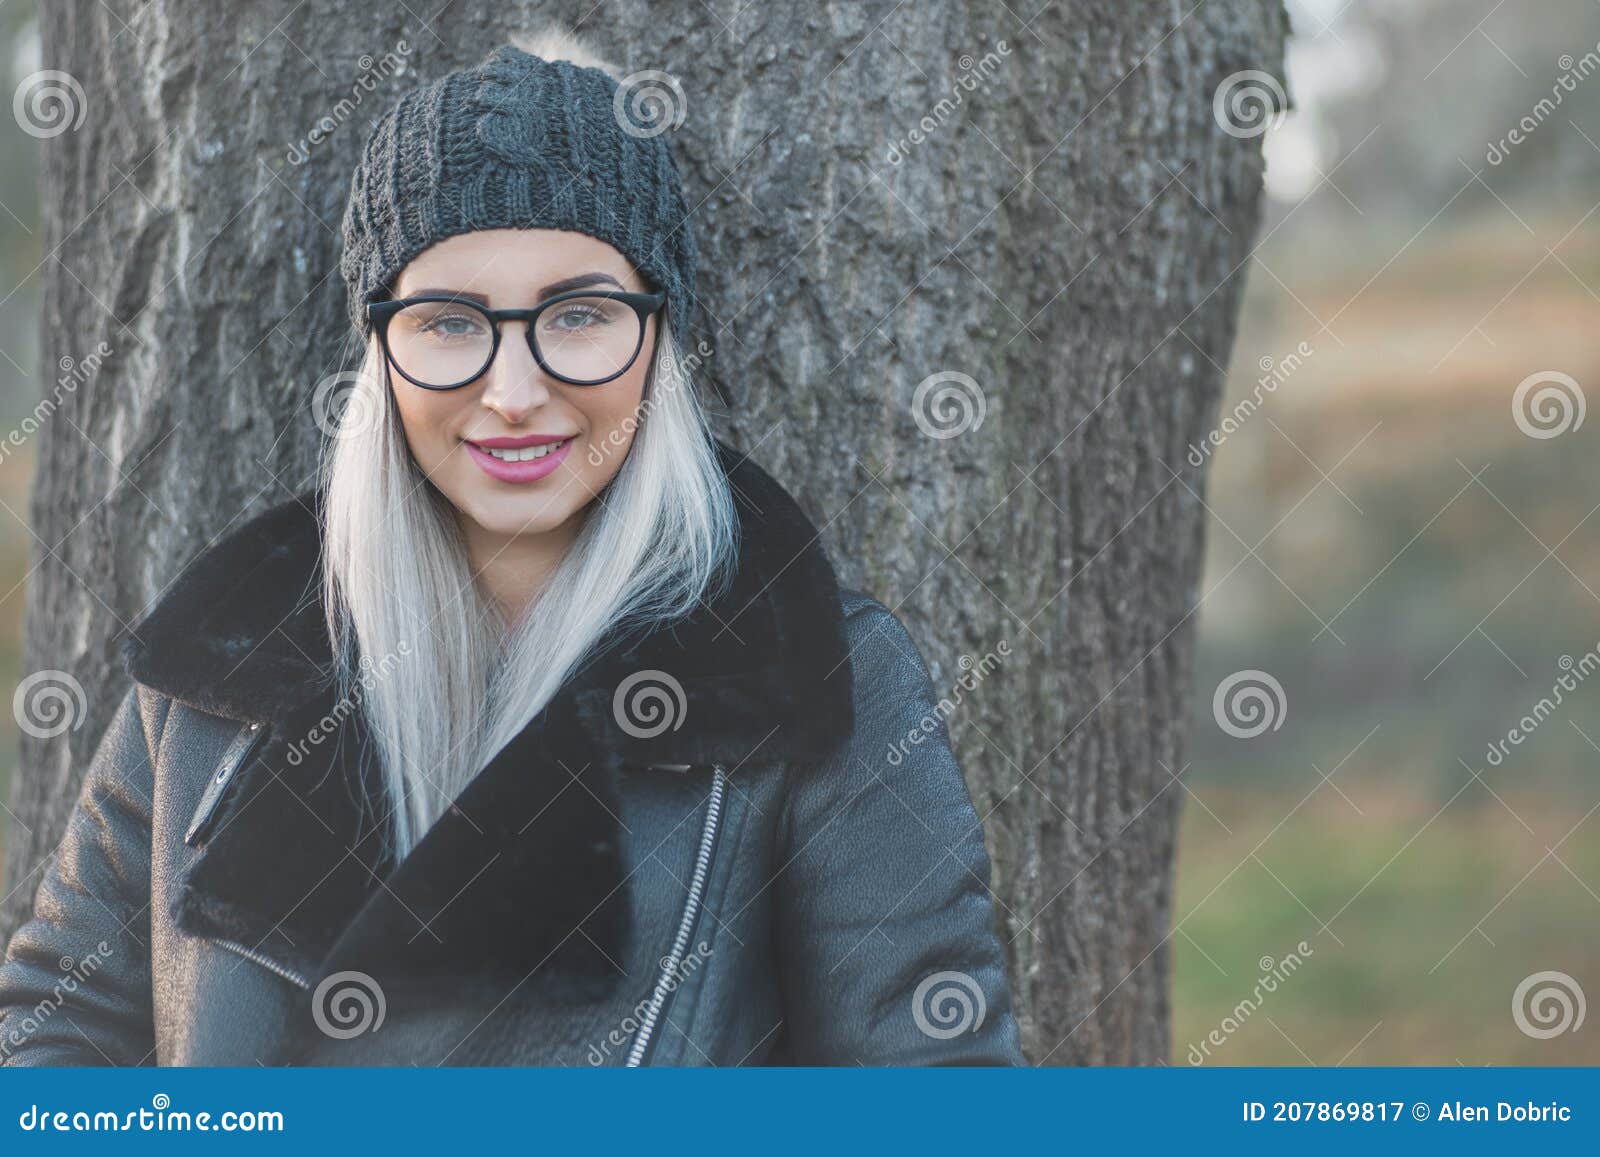 Retrato De Mujer Sonriente En Ropa De Abrigo En El Día De Invierno Al Aire  Libre. Chica Feliz Con Gorra De Lana Y Chaqueta Negra Imagen de archivo -  Imagen de ropa